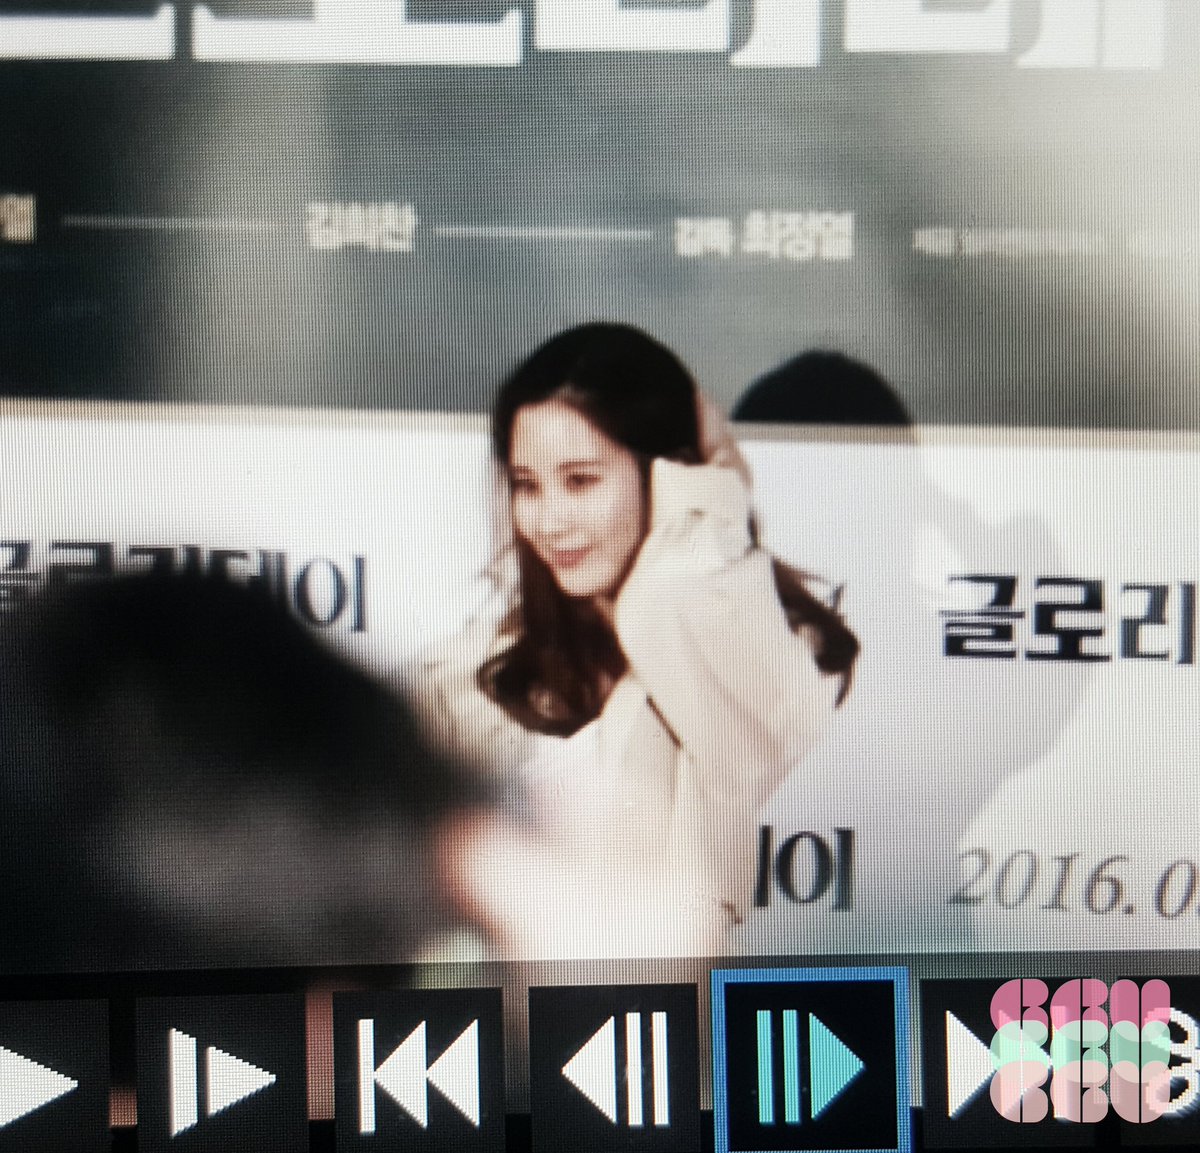 [PIC][21-03-2016]SeoHyun xuất hiện tại buổi công chiếu Vip của bộ phim “One Way Trip (Glory Day)” vào tối nay  CeEUtwMUMAEOgd_